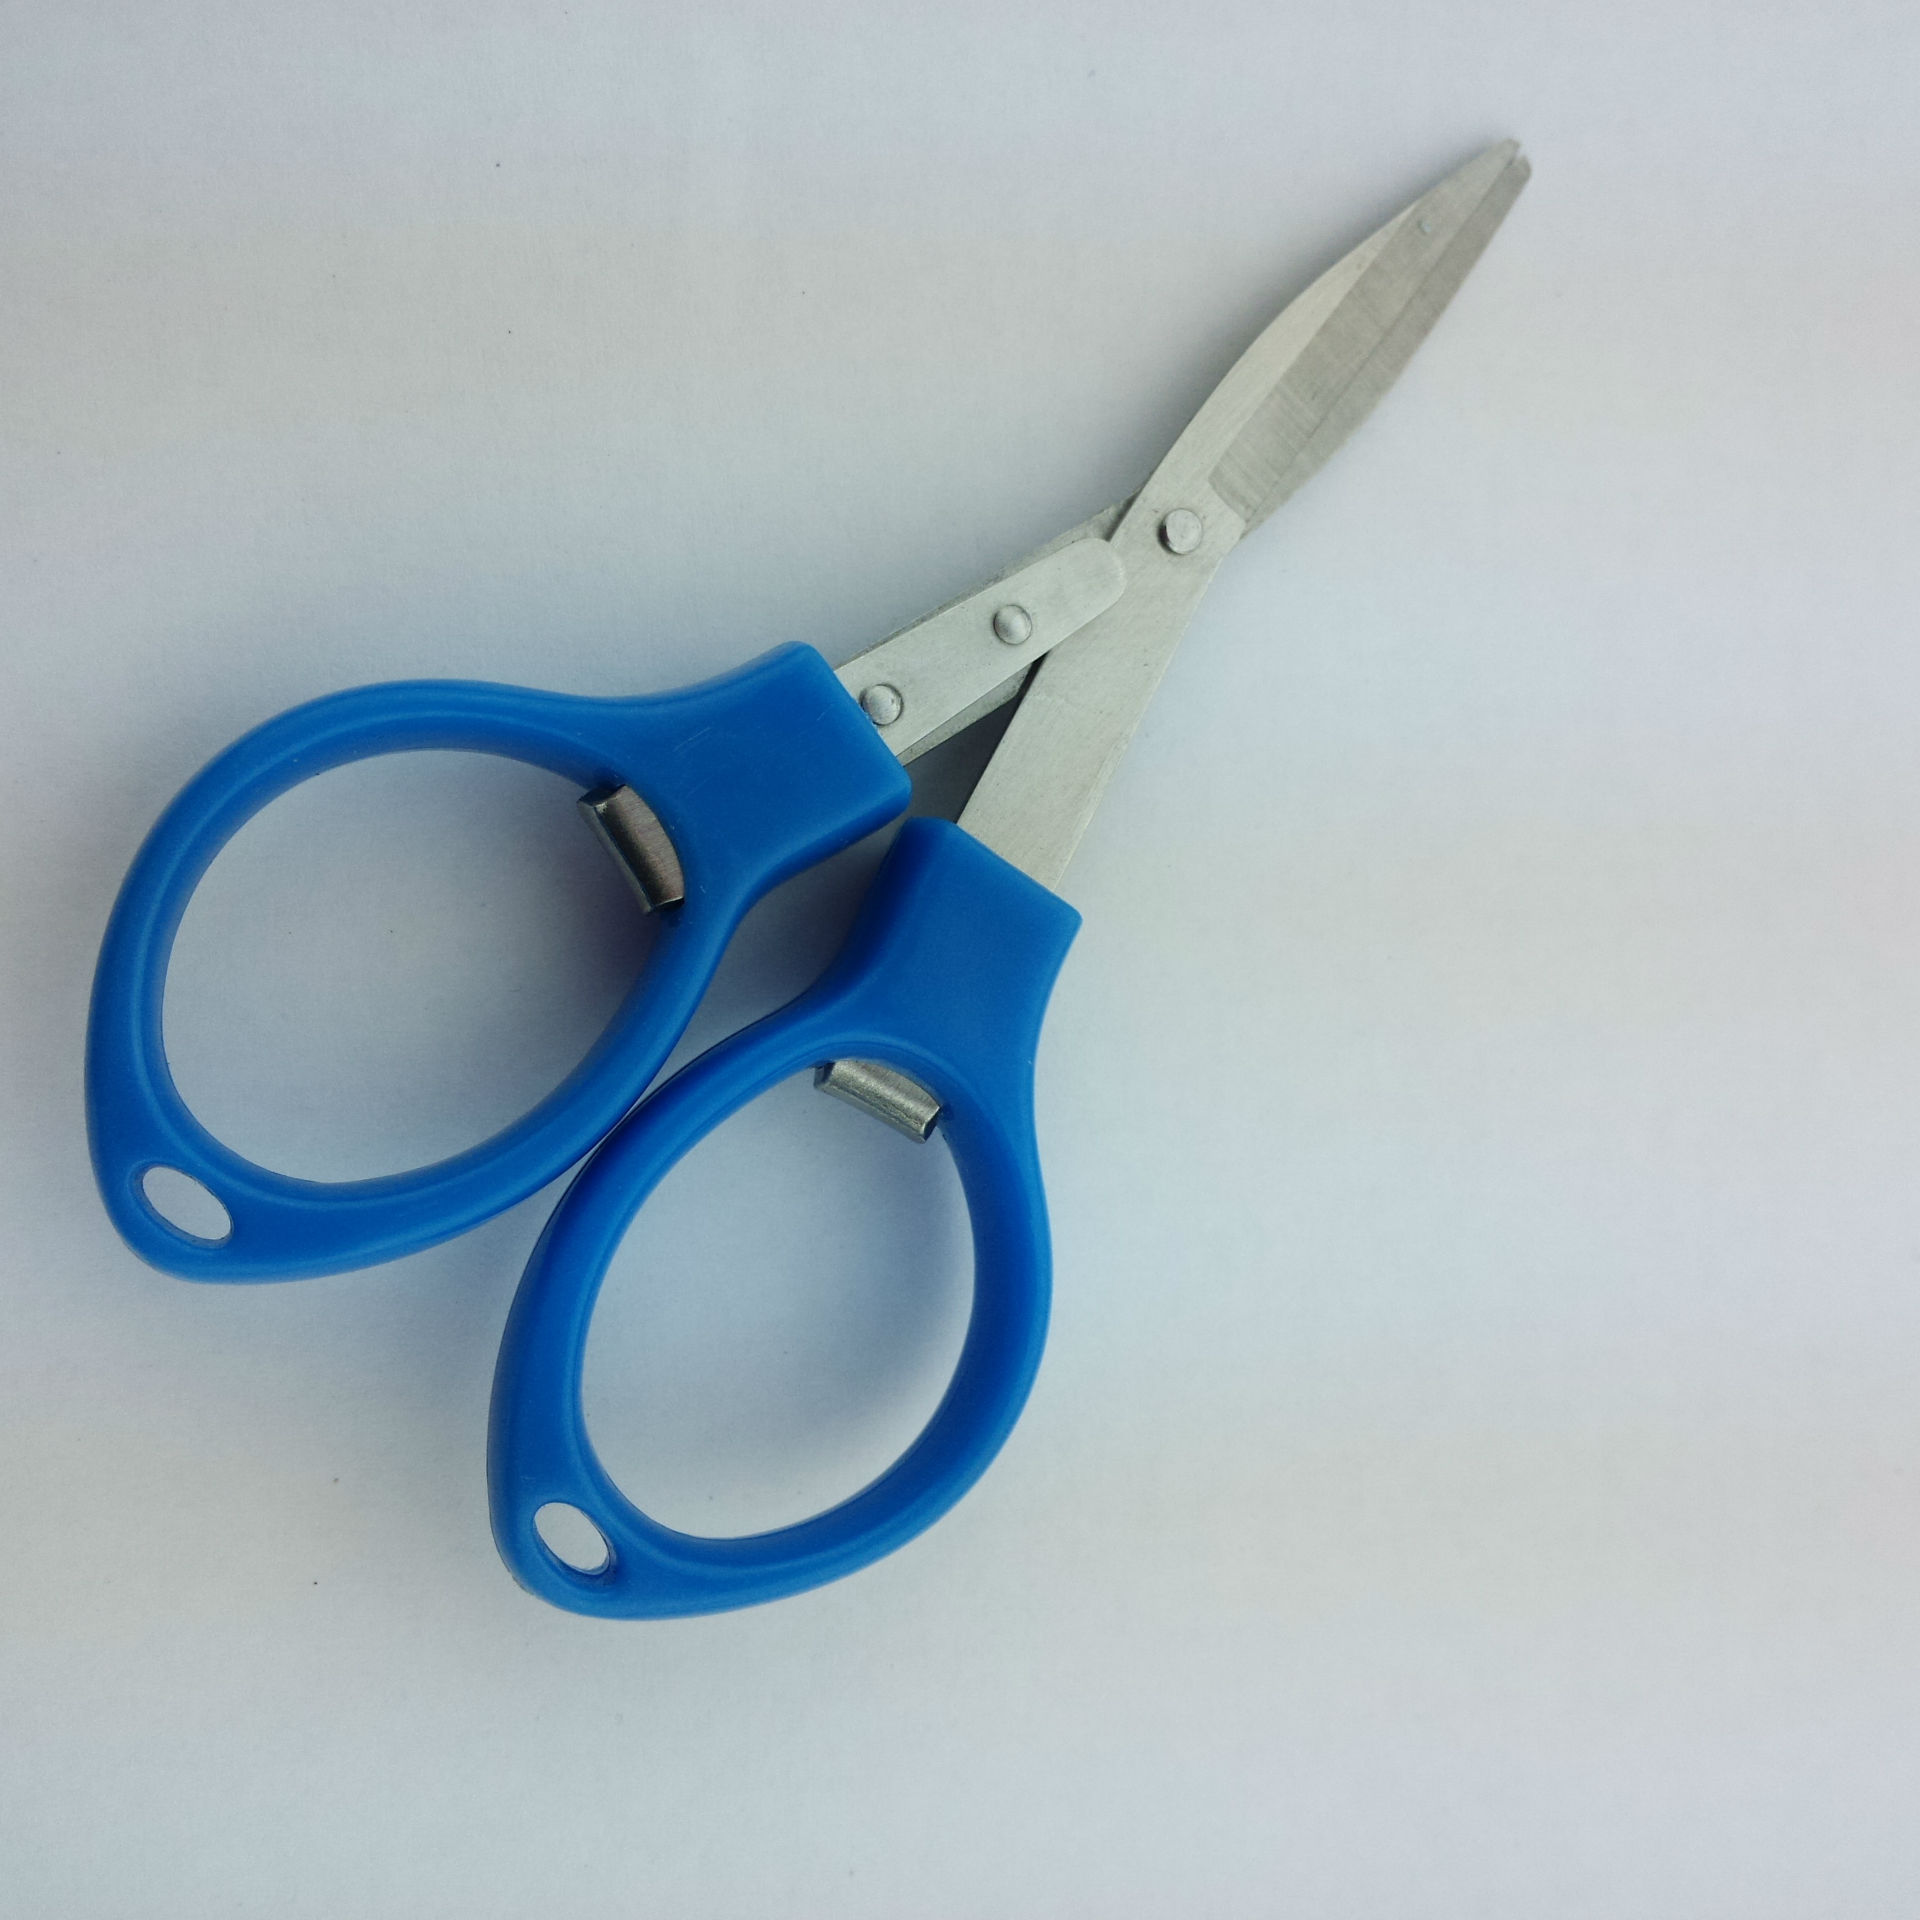 专业生产眼镜形剪刀 8字塑料柄剪刀 旅行携带方便折叠剪刀